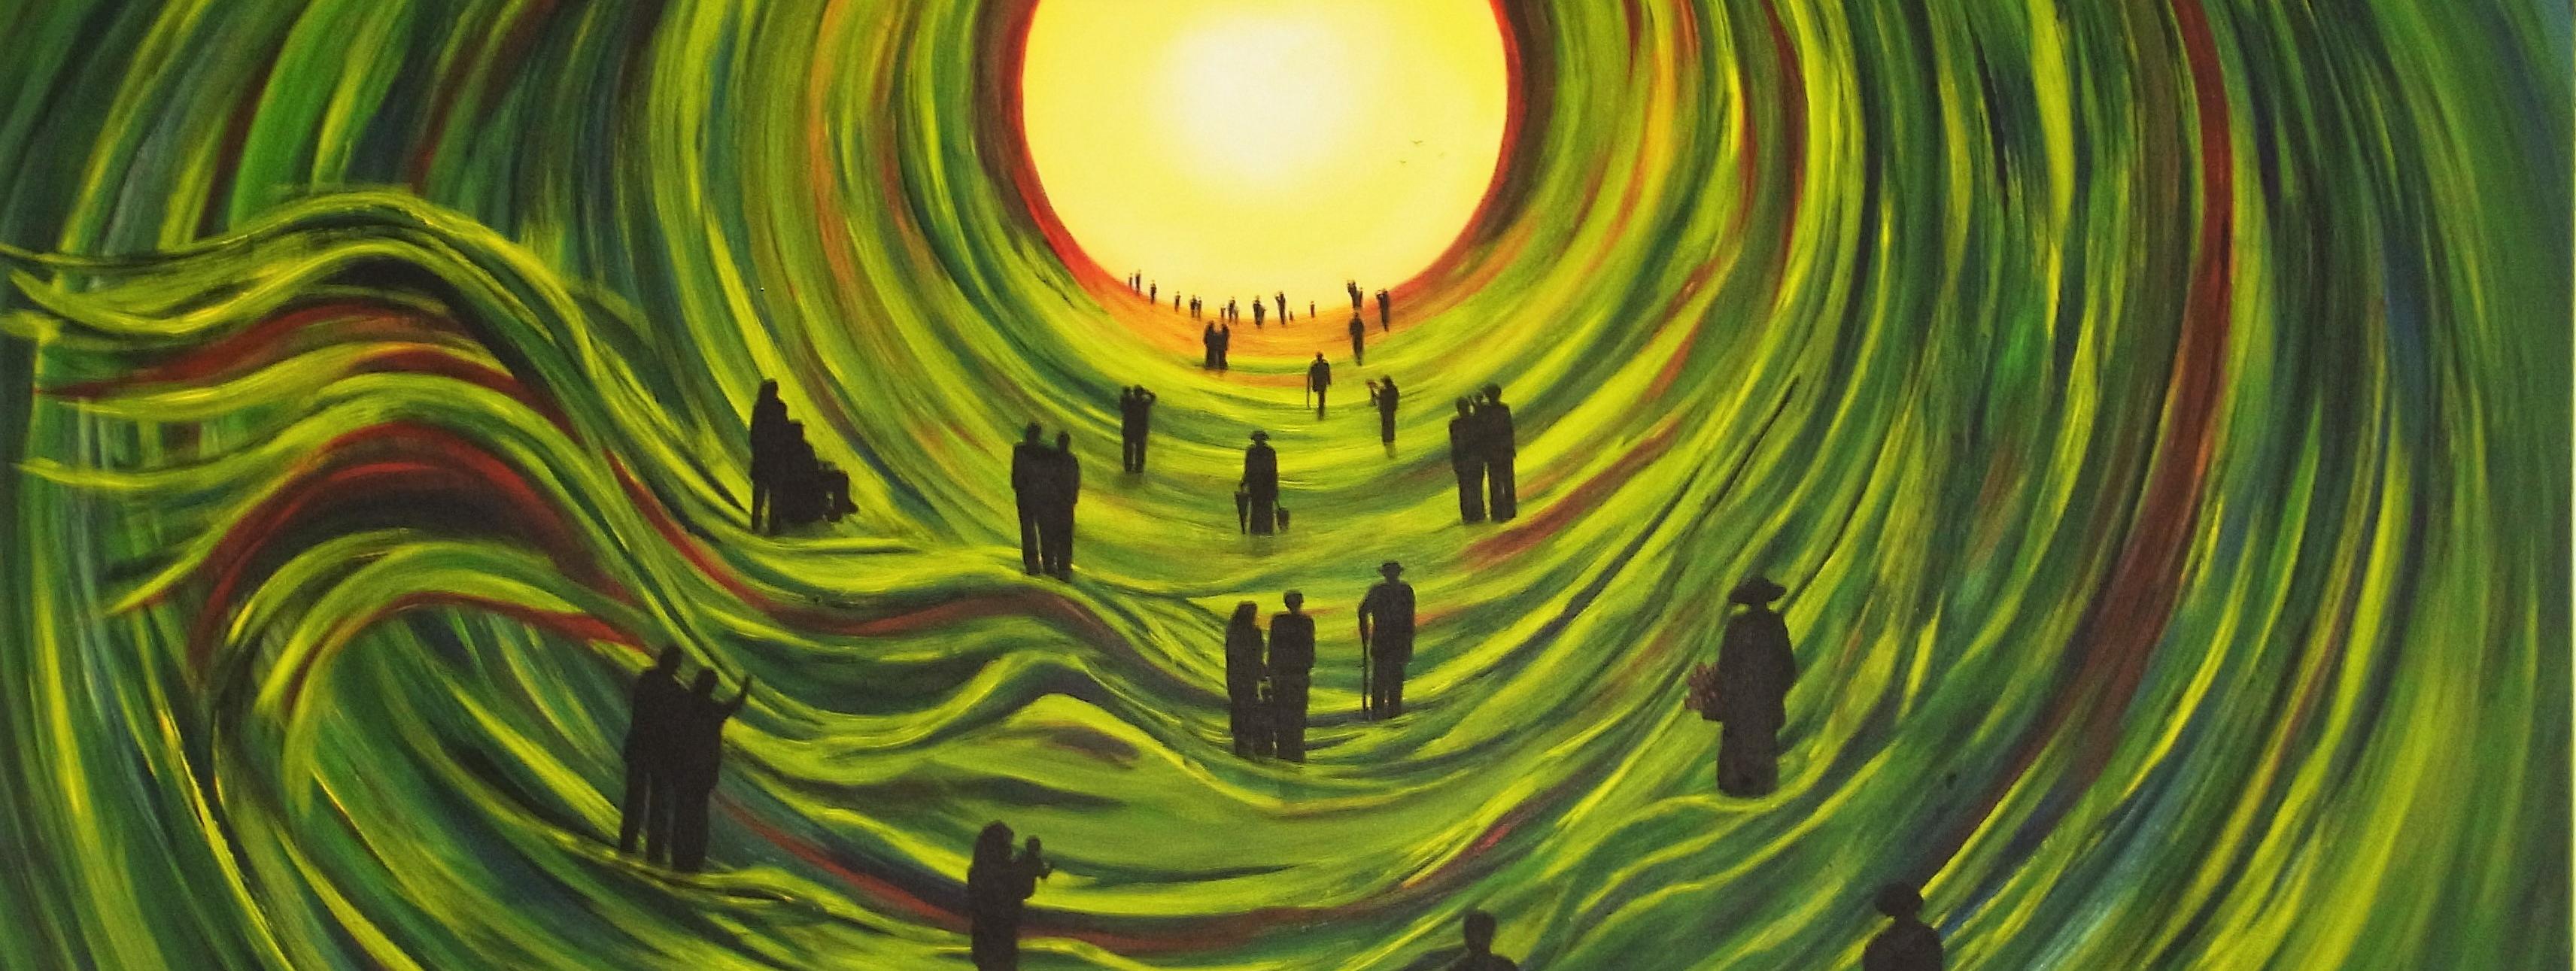 Das Gemälde ist mit grüner, gelber und brauner Farbe gemalt. Zusehen ist eine Art Tunnel aus mehreren grün-braunen Kreisen, die auf einen gelben Kreis zulaufen. Darin sind zahlreiche Figuren in schwazer Farbe.